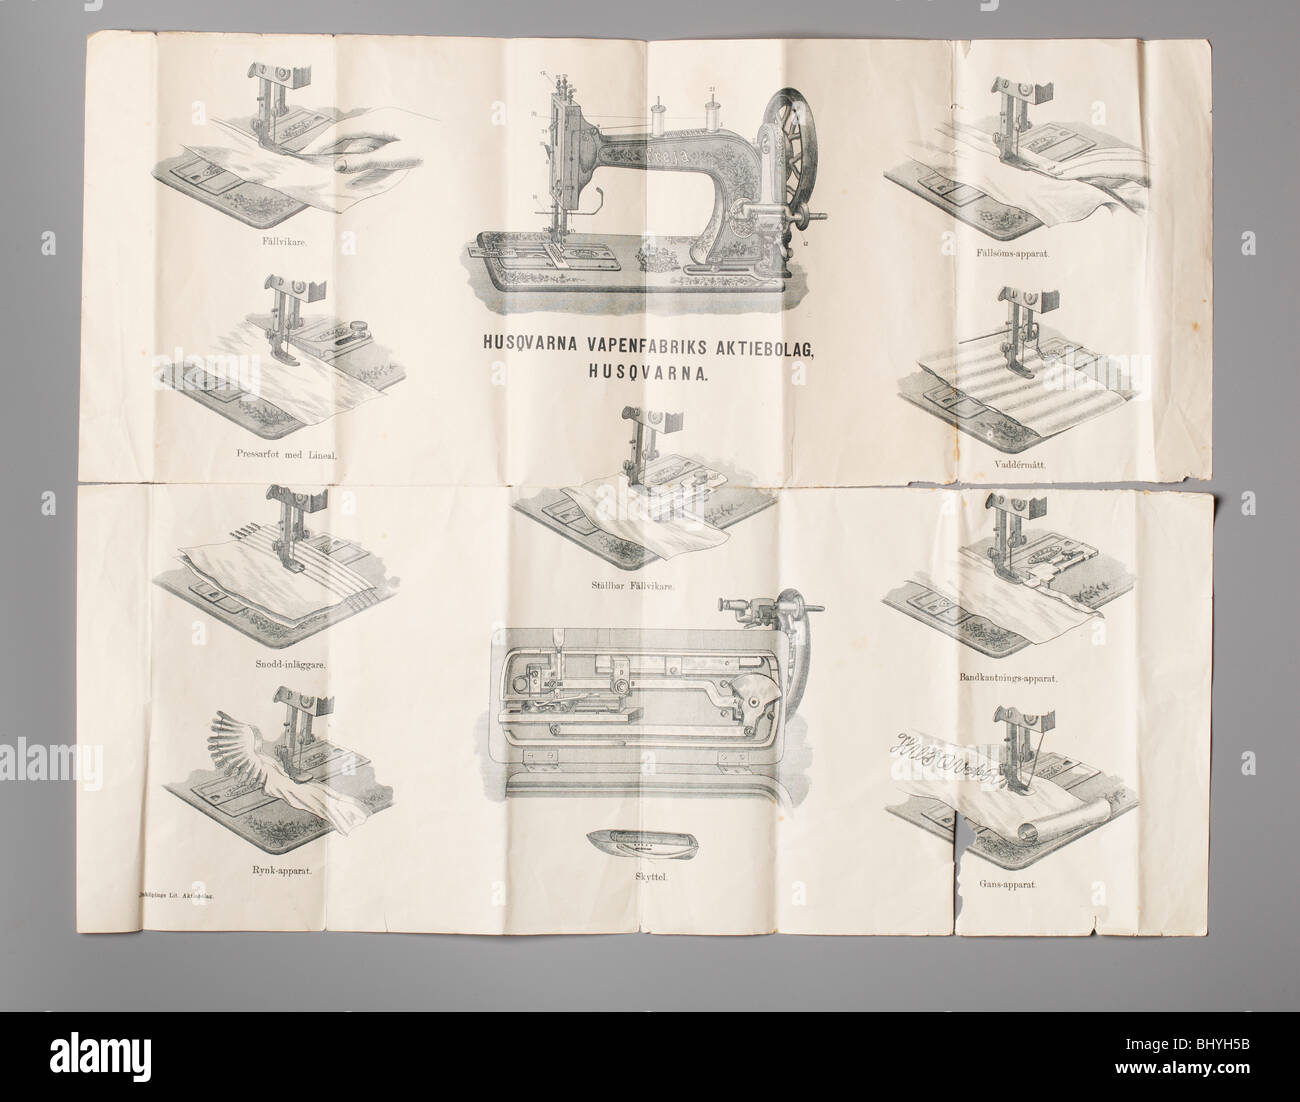 Les instructions comment utiliser une machine à coudre Husqvarna suédois des années 1800 Banque D'Images